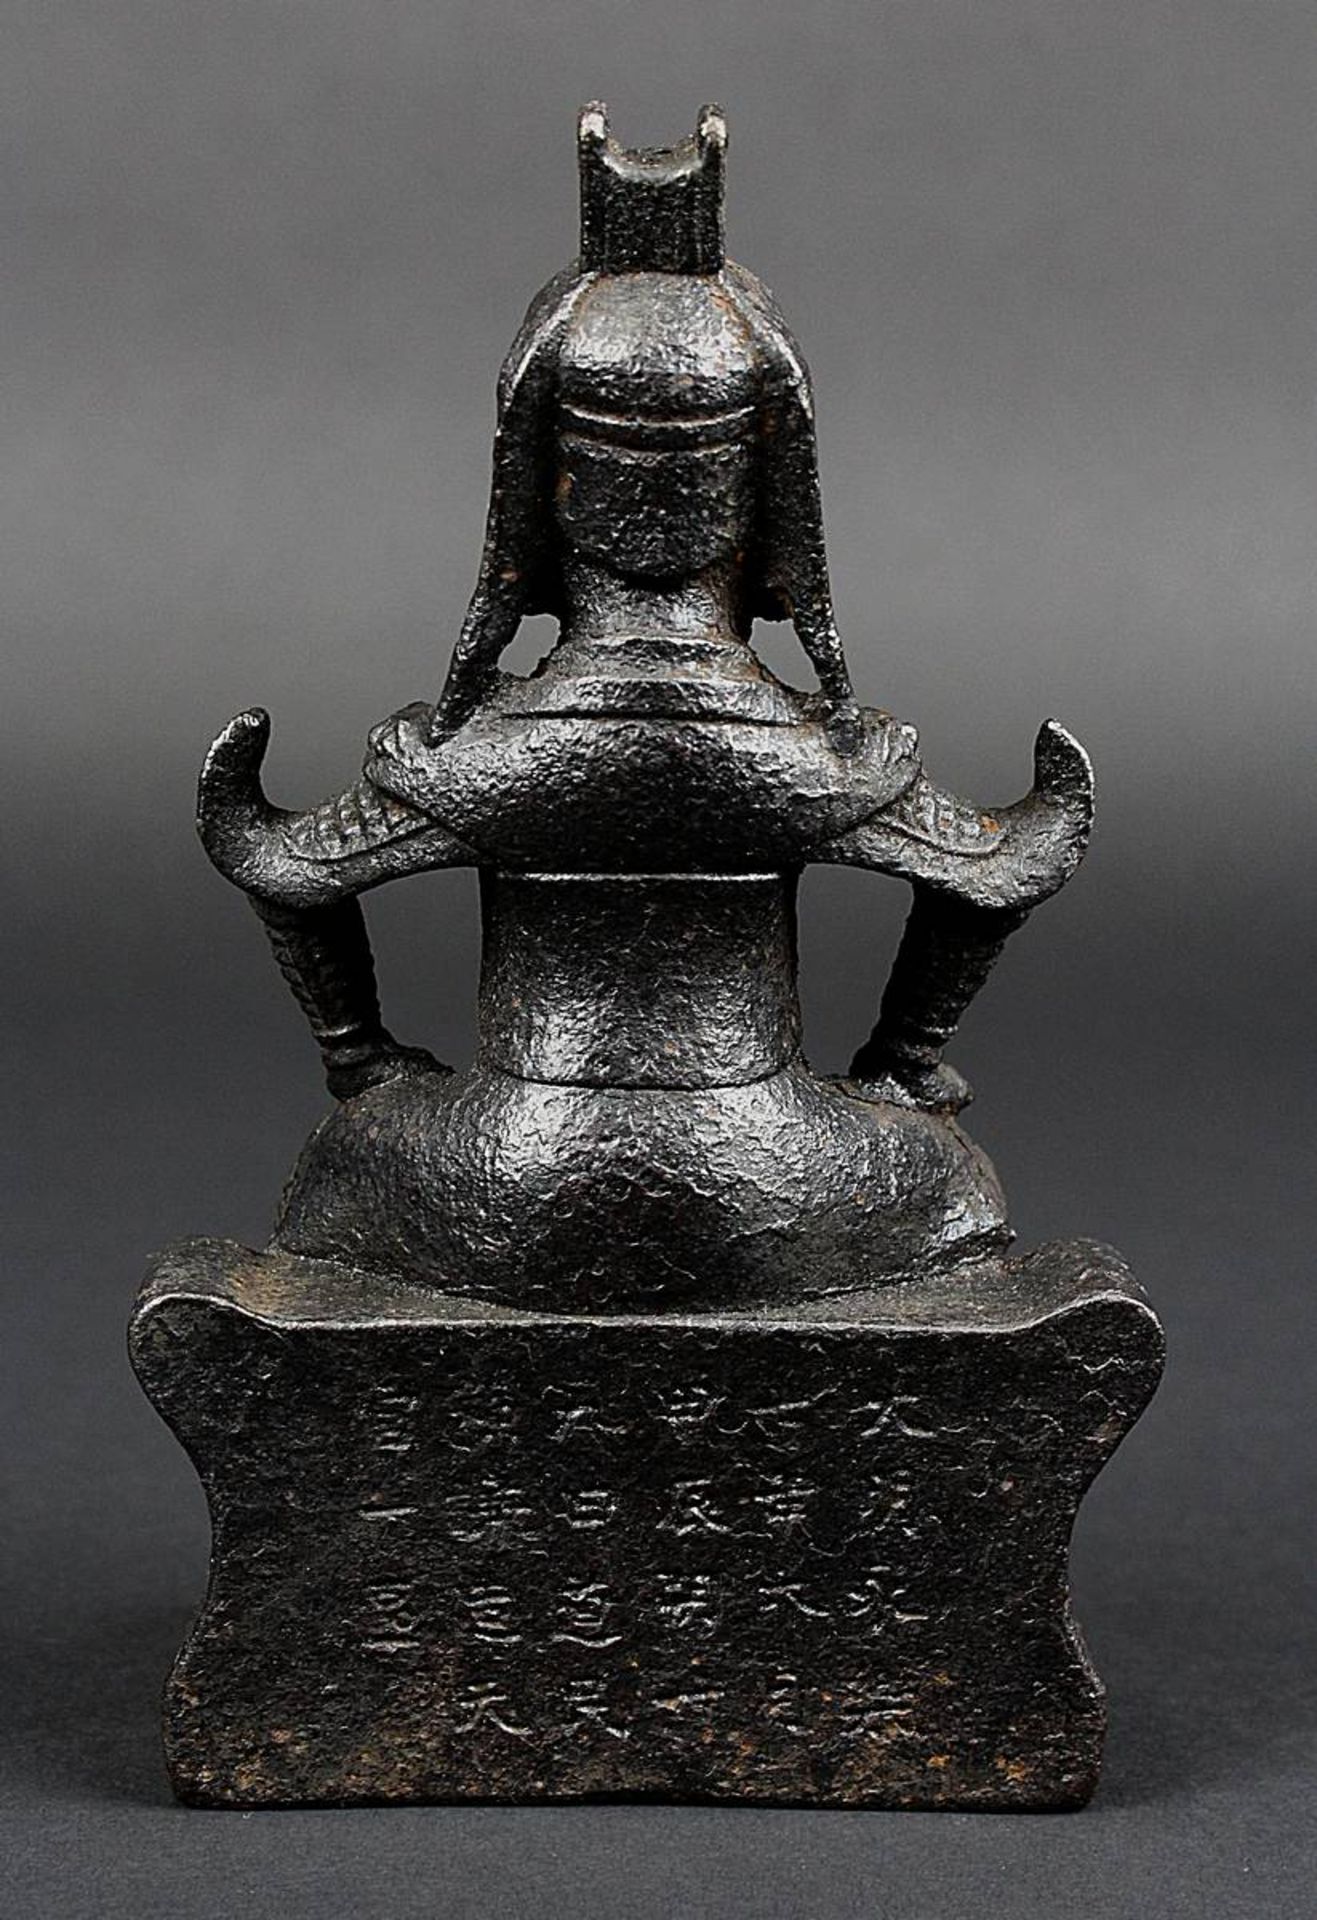 Kriegerfigur aus Eisen, China 18. Jh., vollplastische Figur eines auf einem Hocker sitzenden Krieger - Bild 3 aus 5